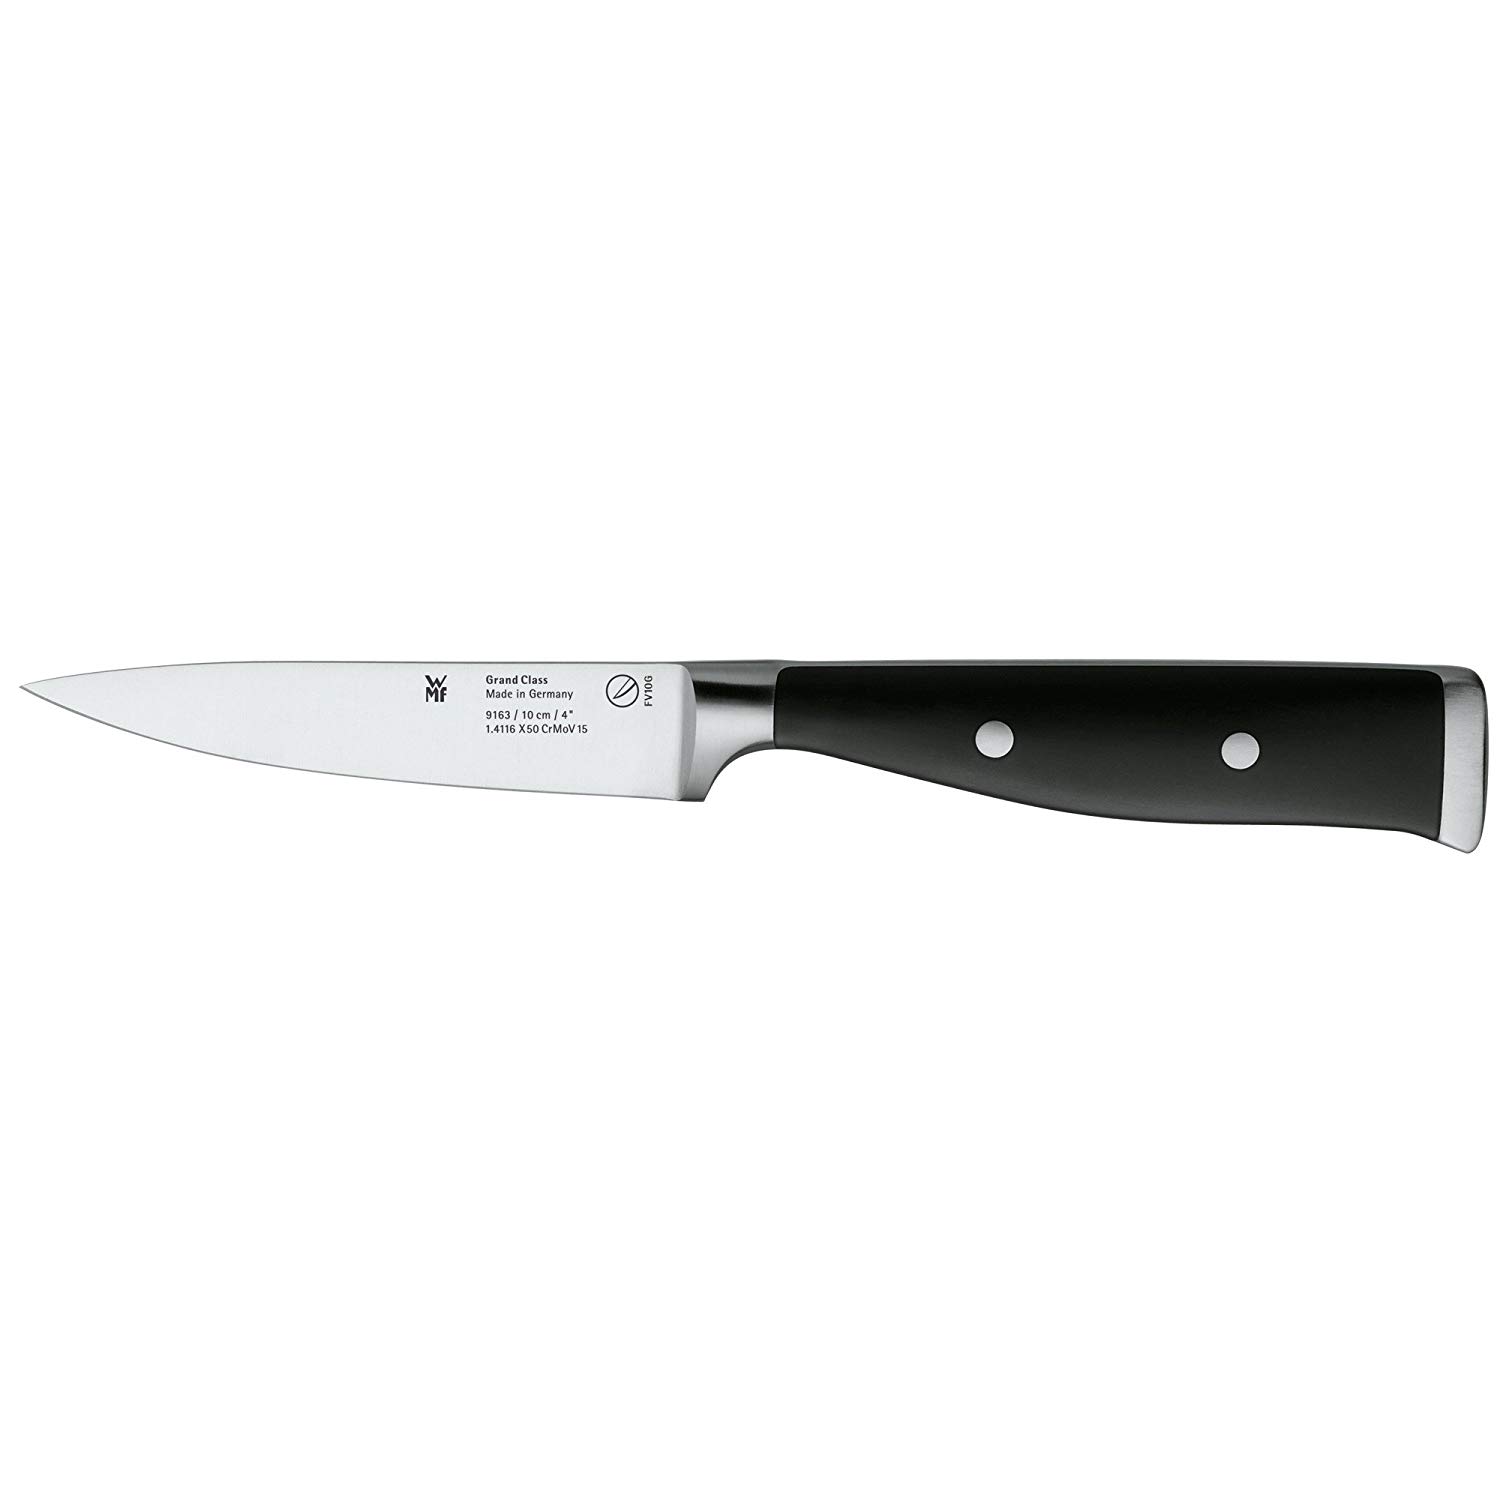 Wmf 10 Cm Grand Class Larding Knife, Black